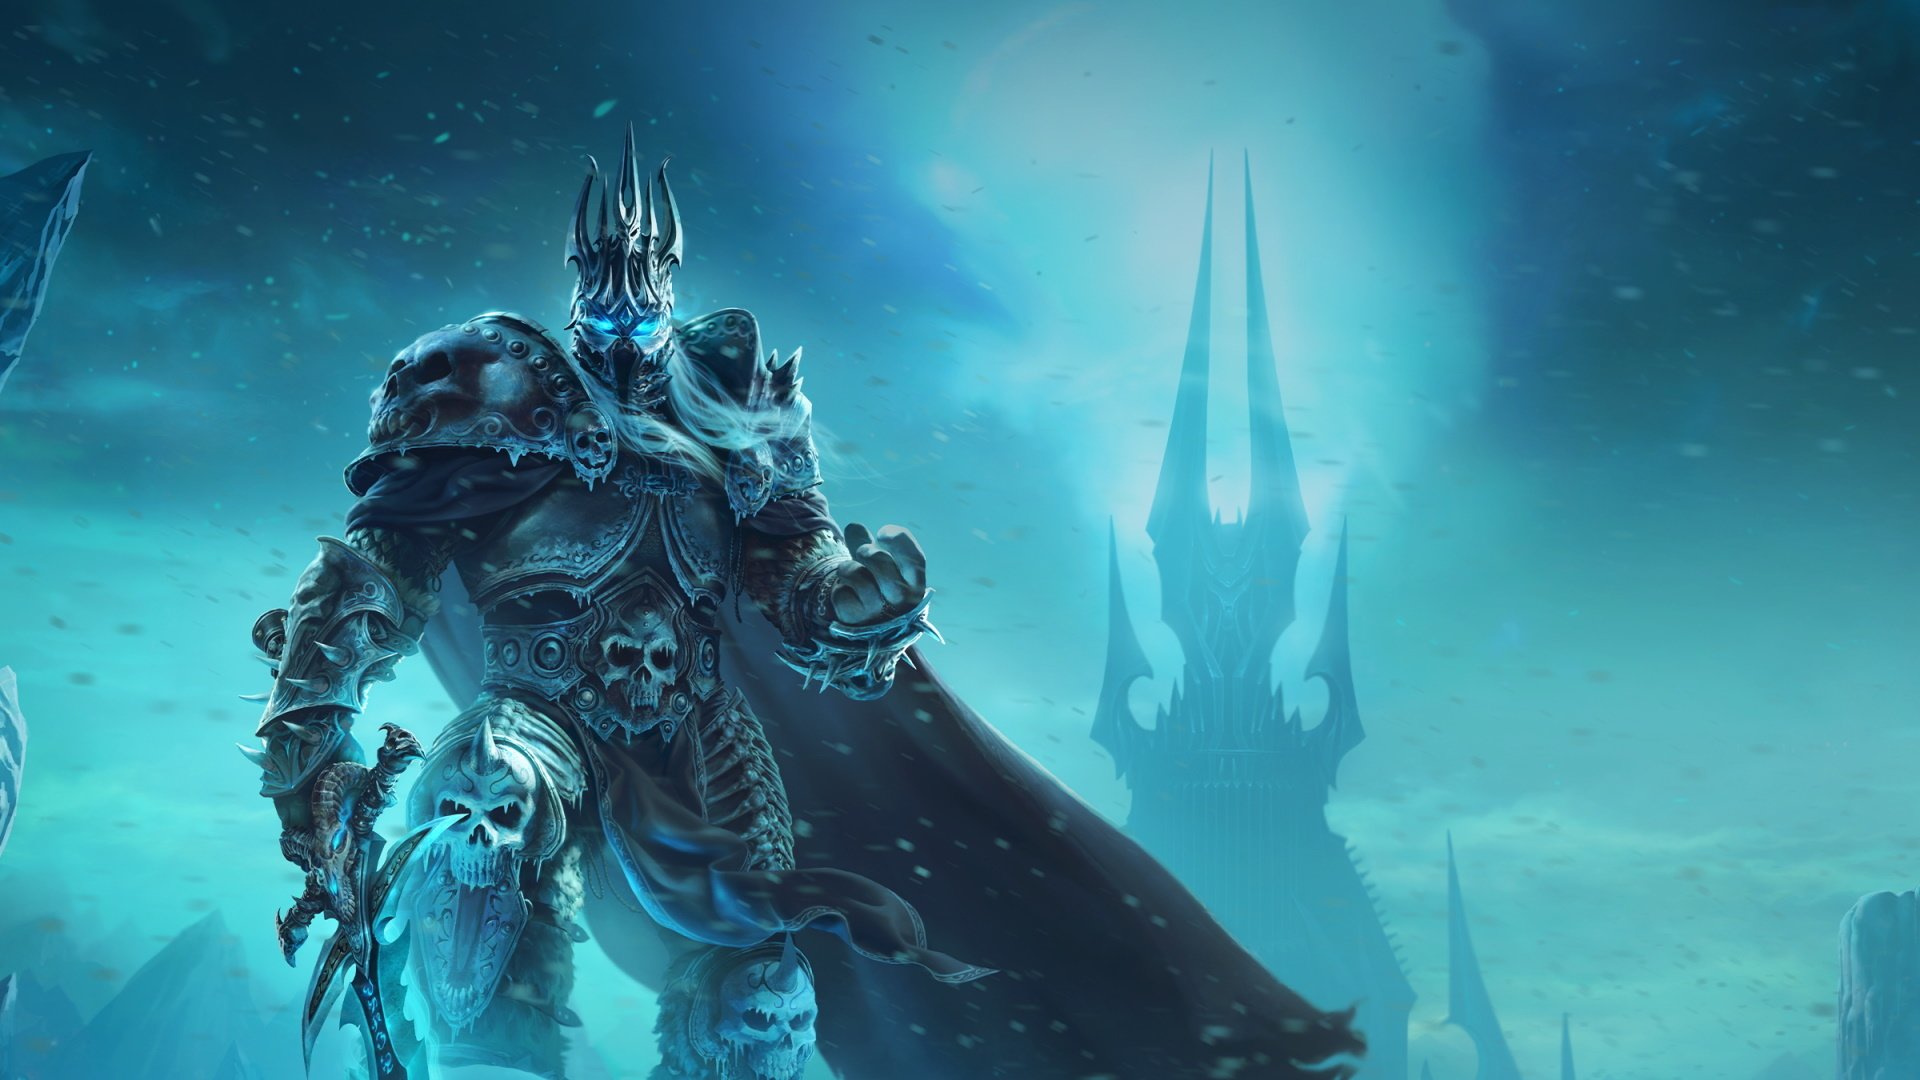 NetEase-ansatte knuste diger Warcraft-statue i protest mot Blizzard -  Gamer.no